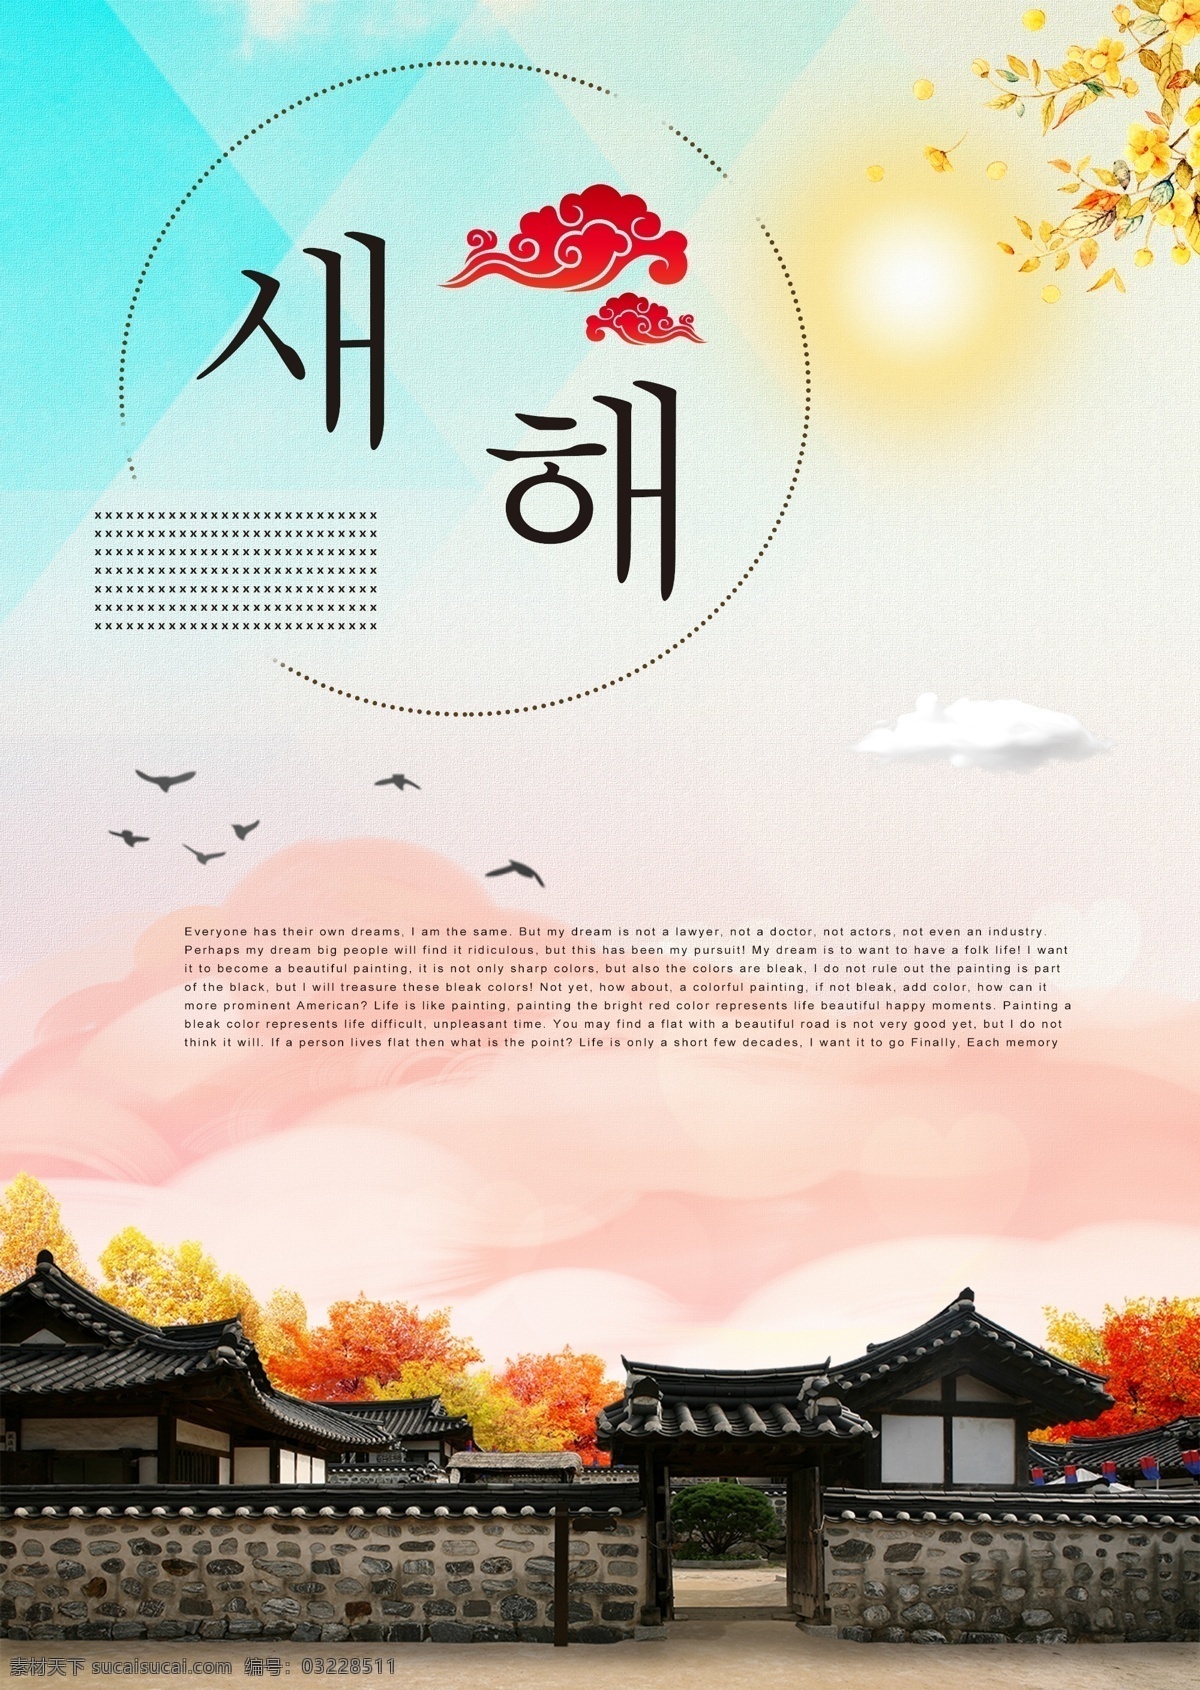 古典 韩国 新年 海报 宫 天空 黑色 暗黄色 朝鲜的 黄色 树叶 美女 装饰 墙纸 绘画 剪贴画 插图